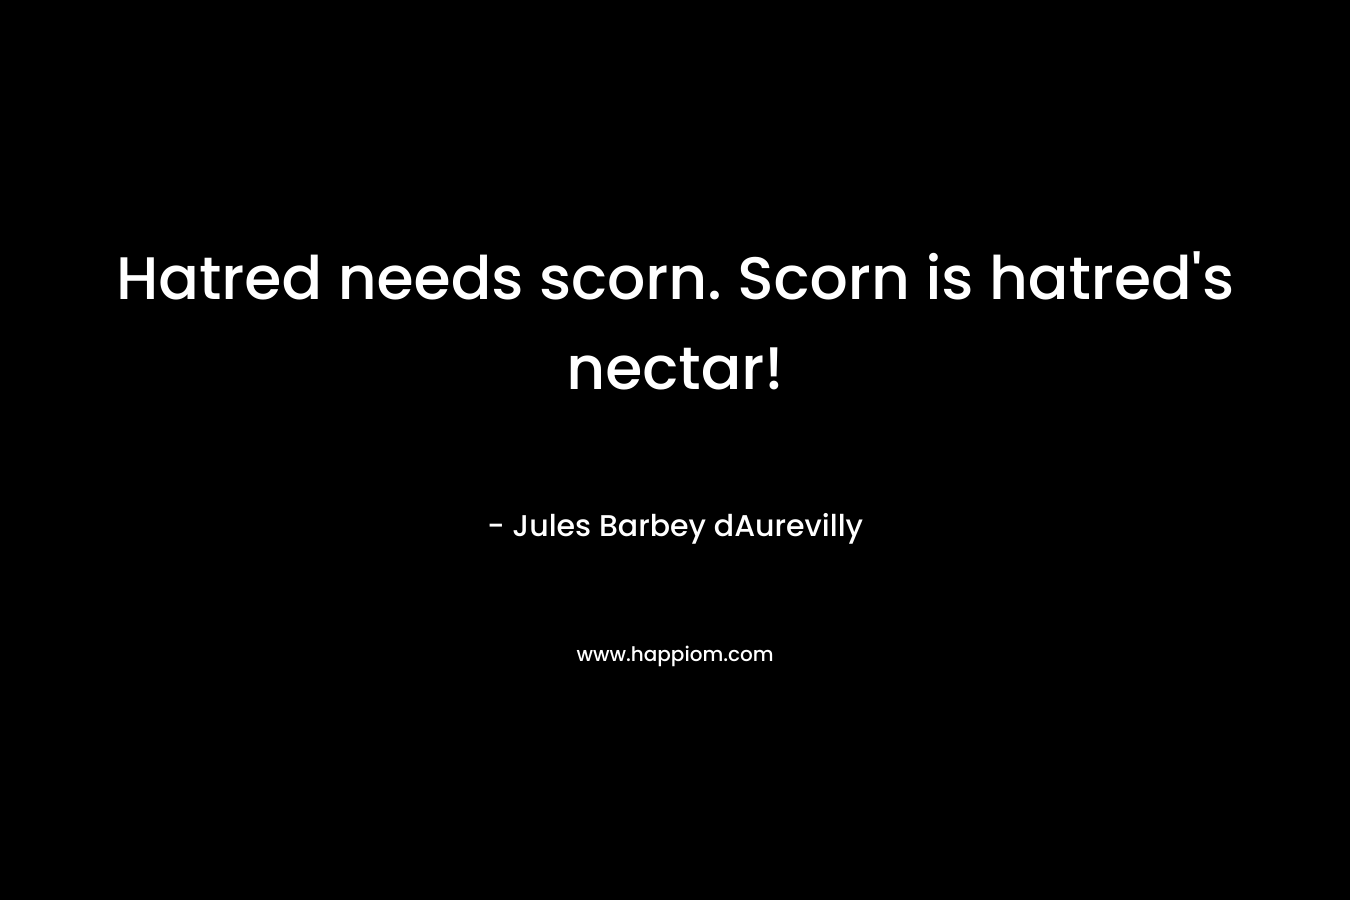 Hatred needs scorn. Scorn is hatred’s nectar! – Jules Barbey dAurevilly